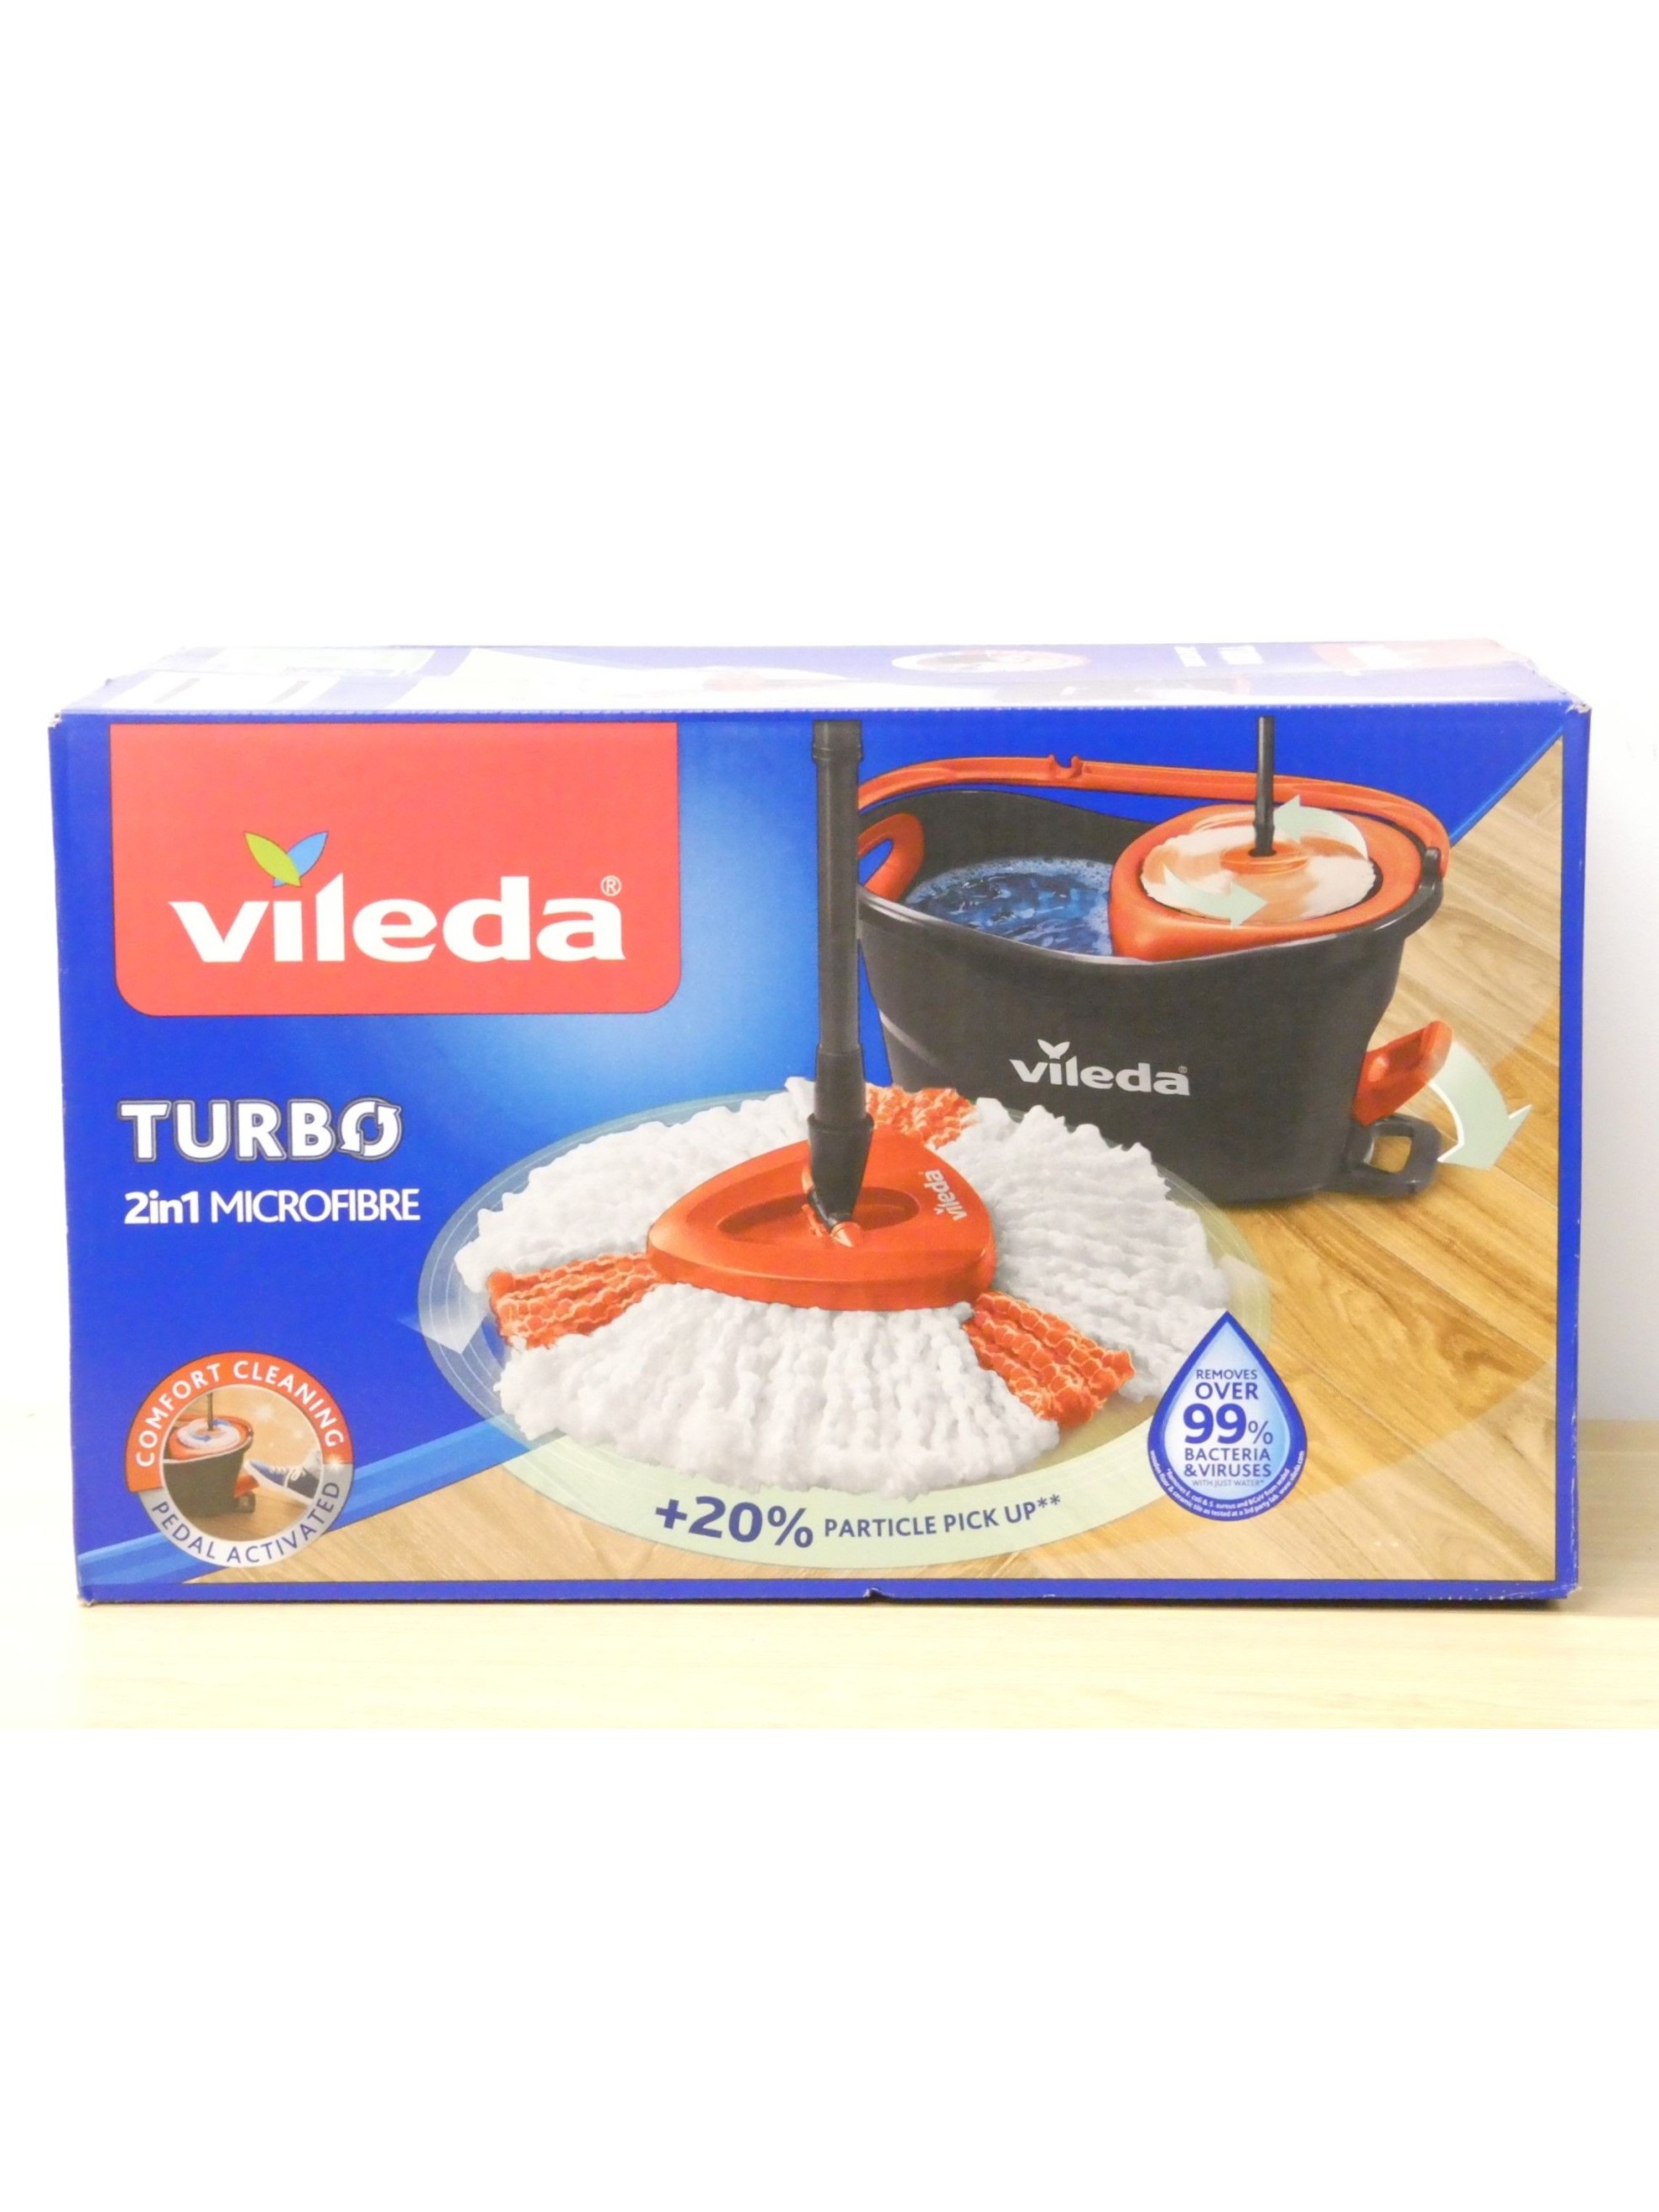 VILEDA Turbo Cubo+Fregona+Palo